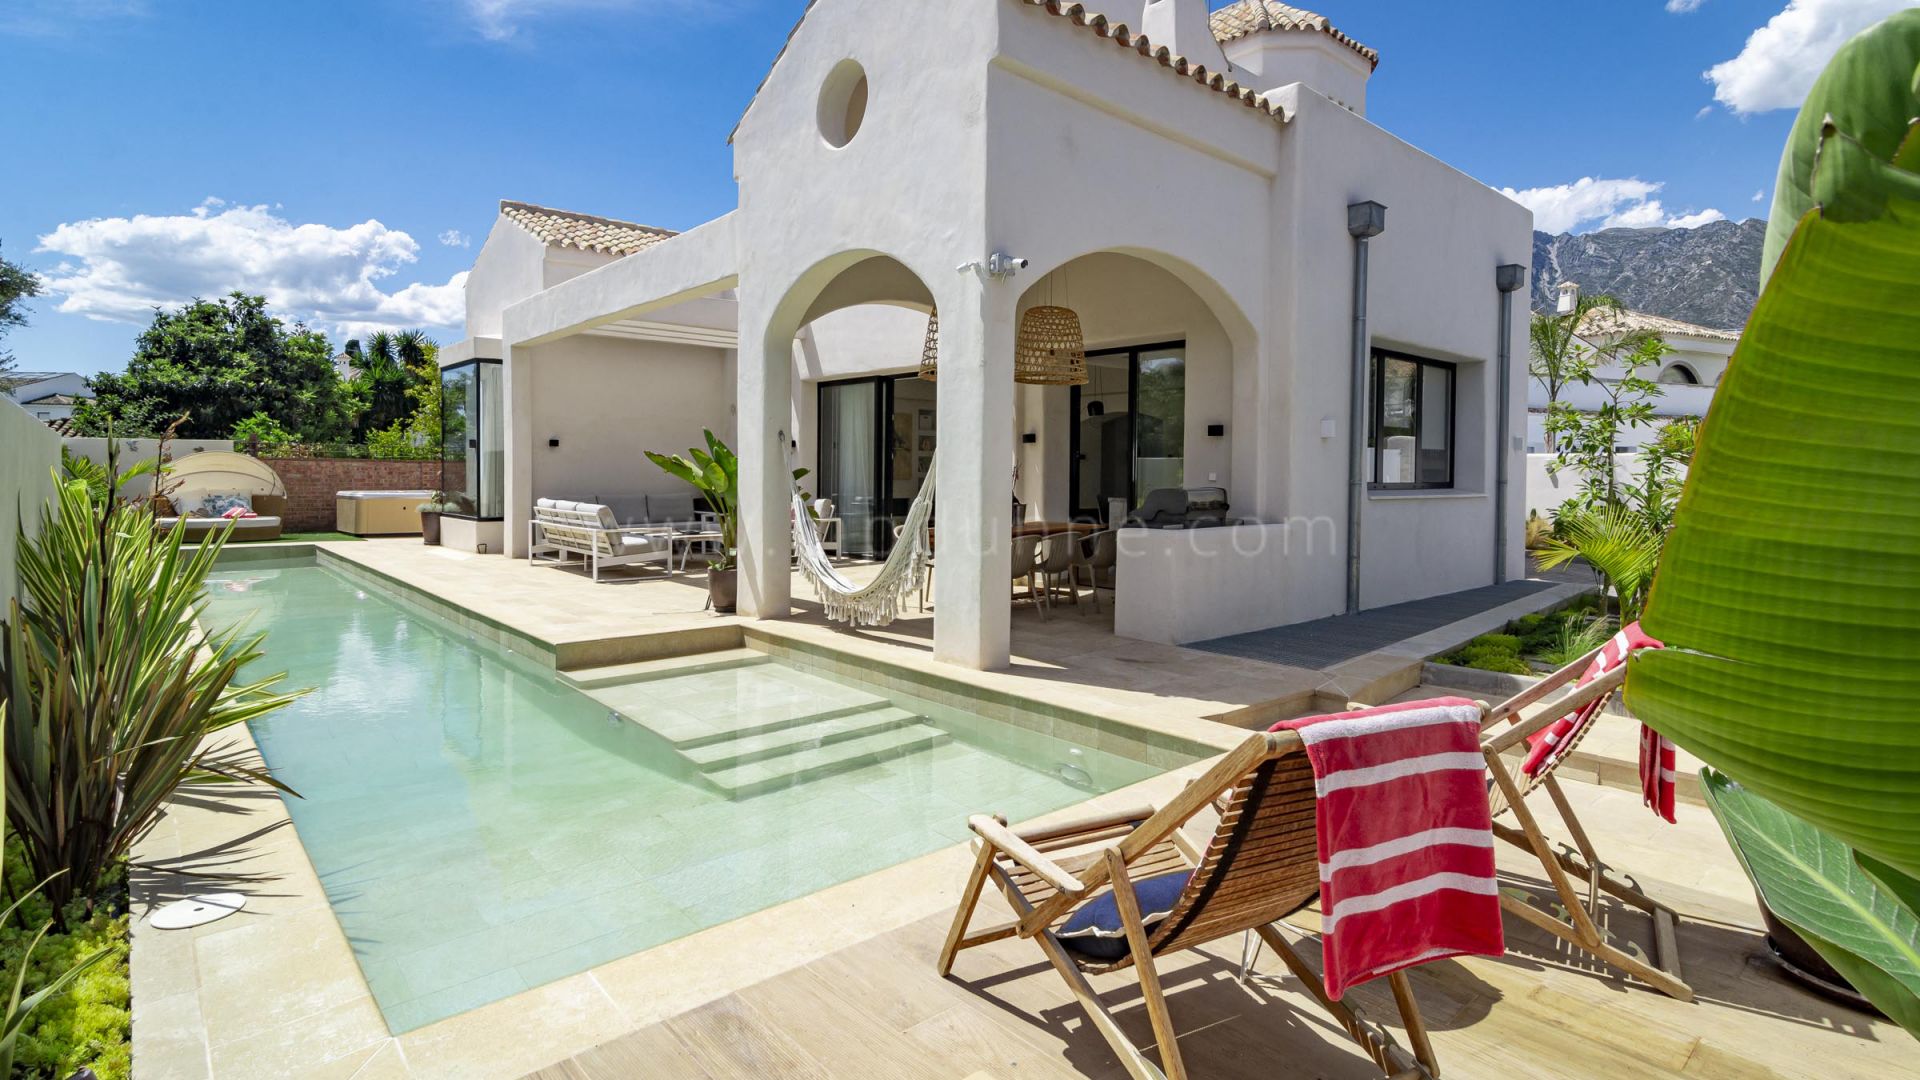 Detached villa for holidays in Casablanca, Marbella